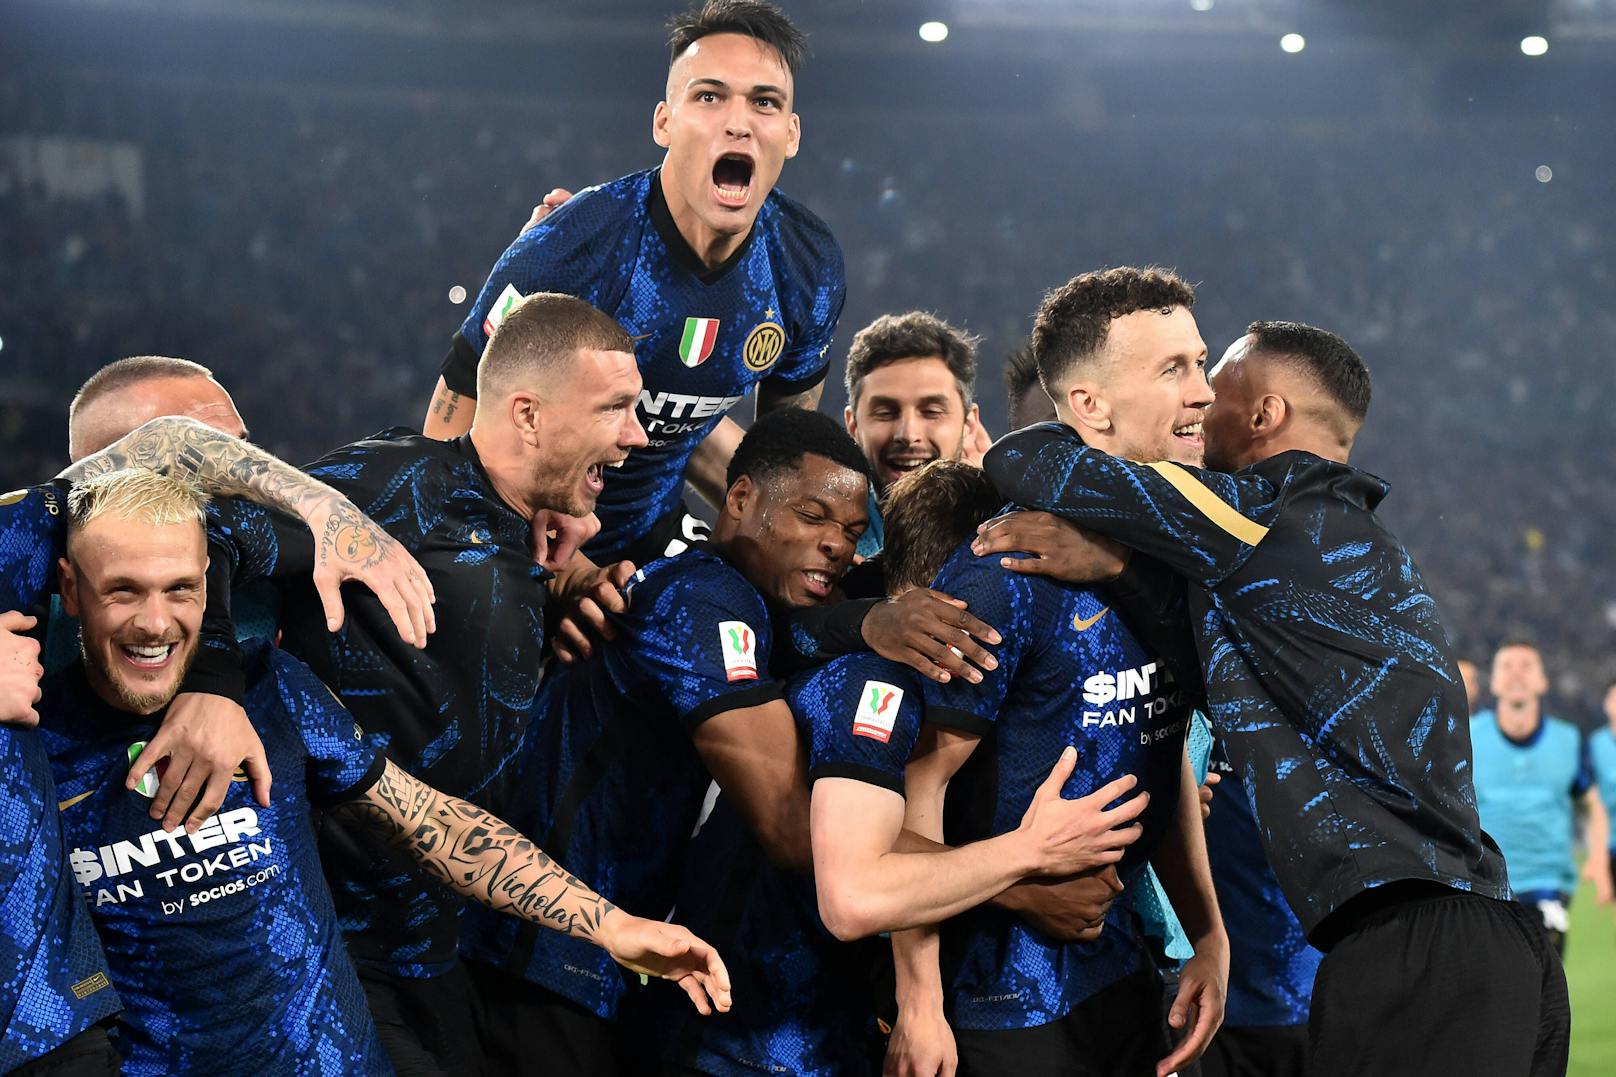 Der Cup-Sieger in Italien heißt Inter Mailand